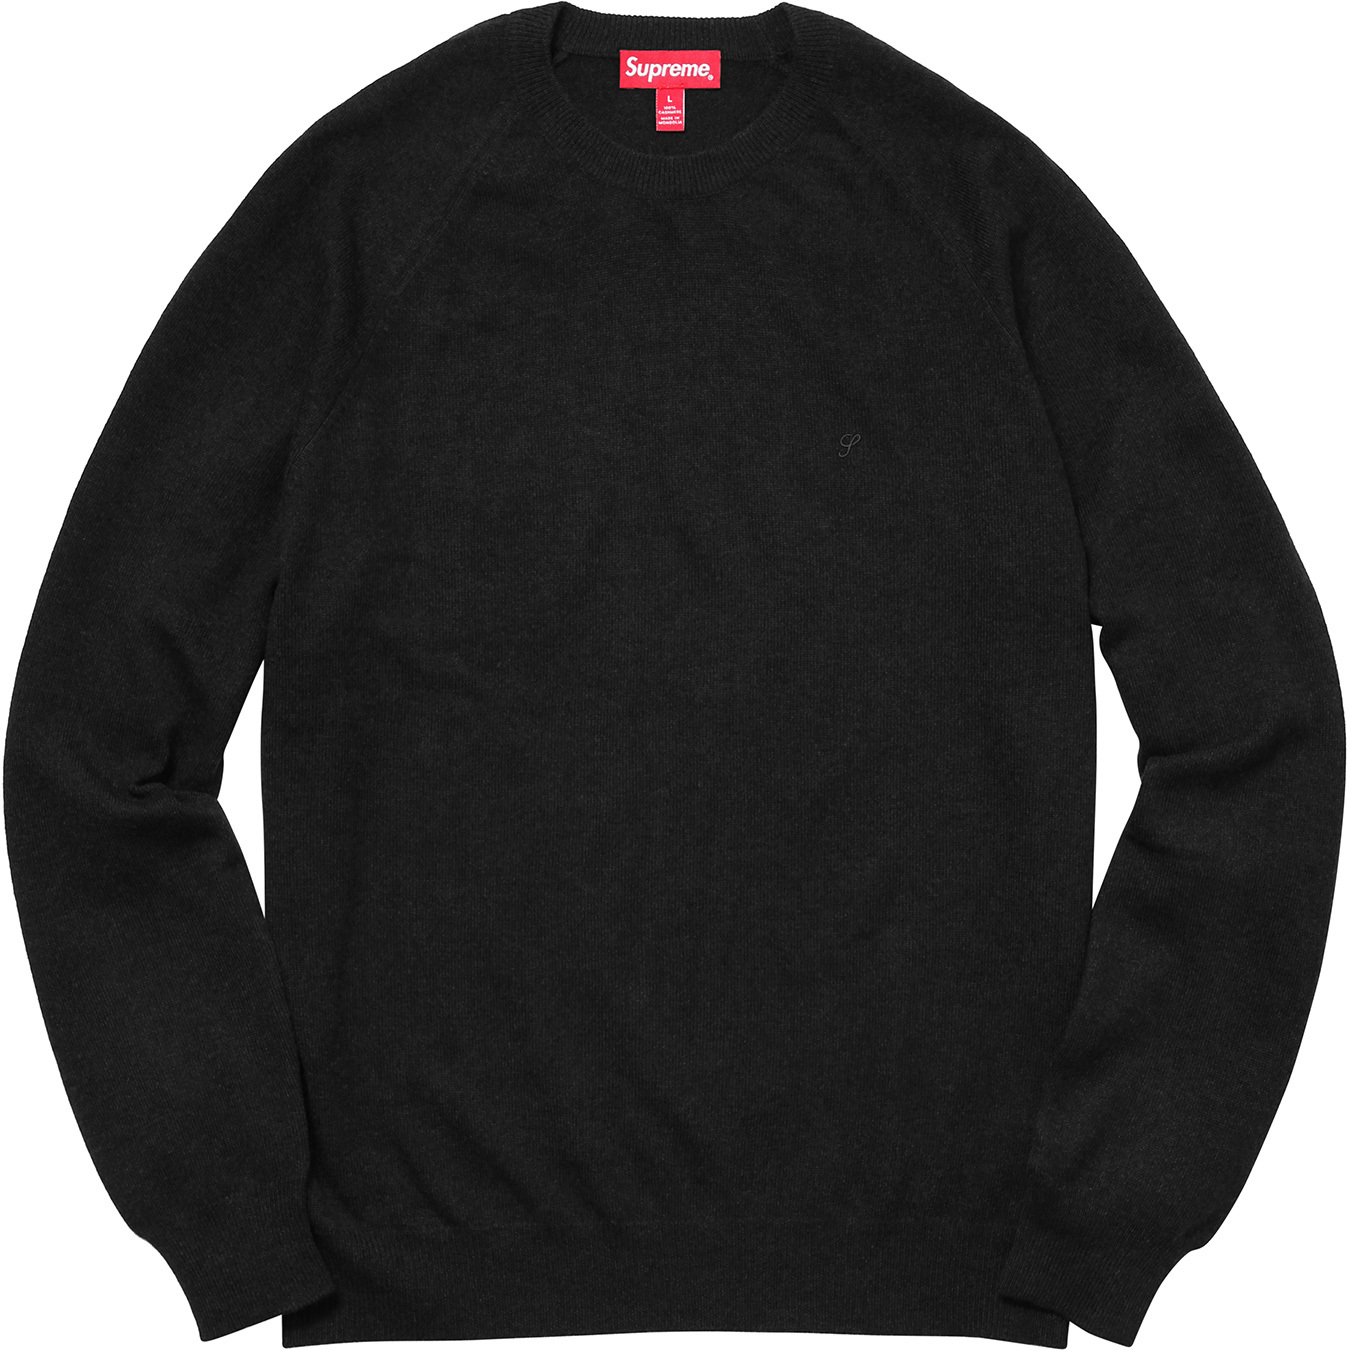 Supreme Cashmere Sweater Black Men's - FW17 - US